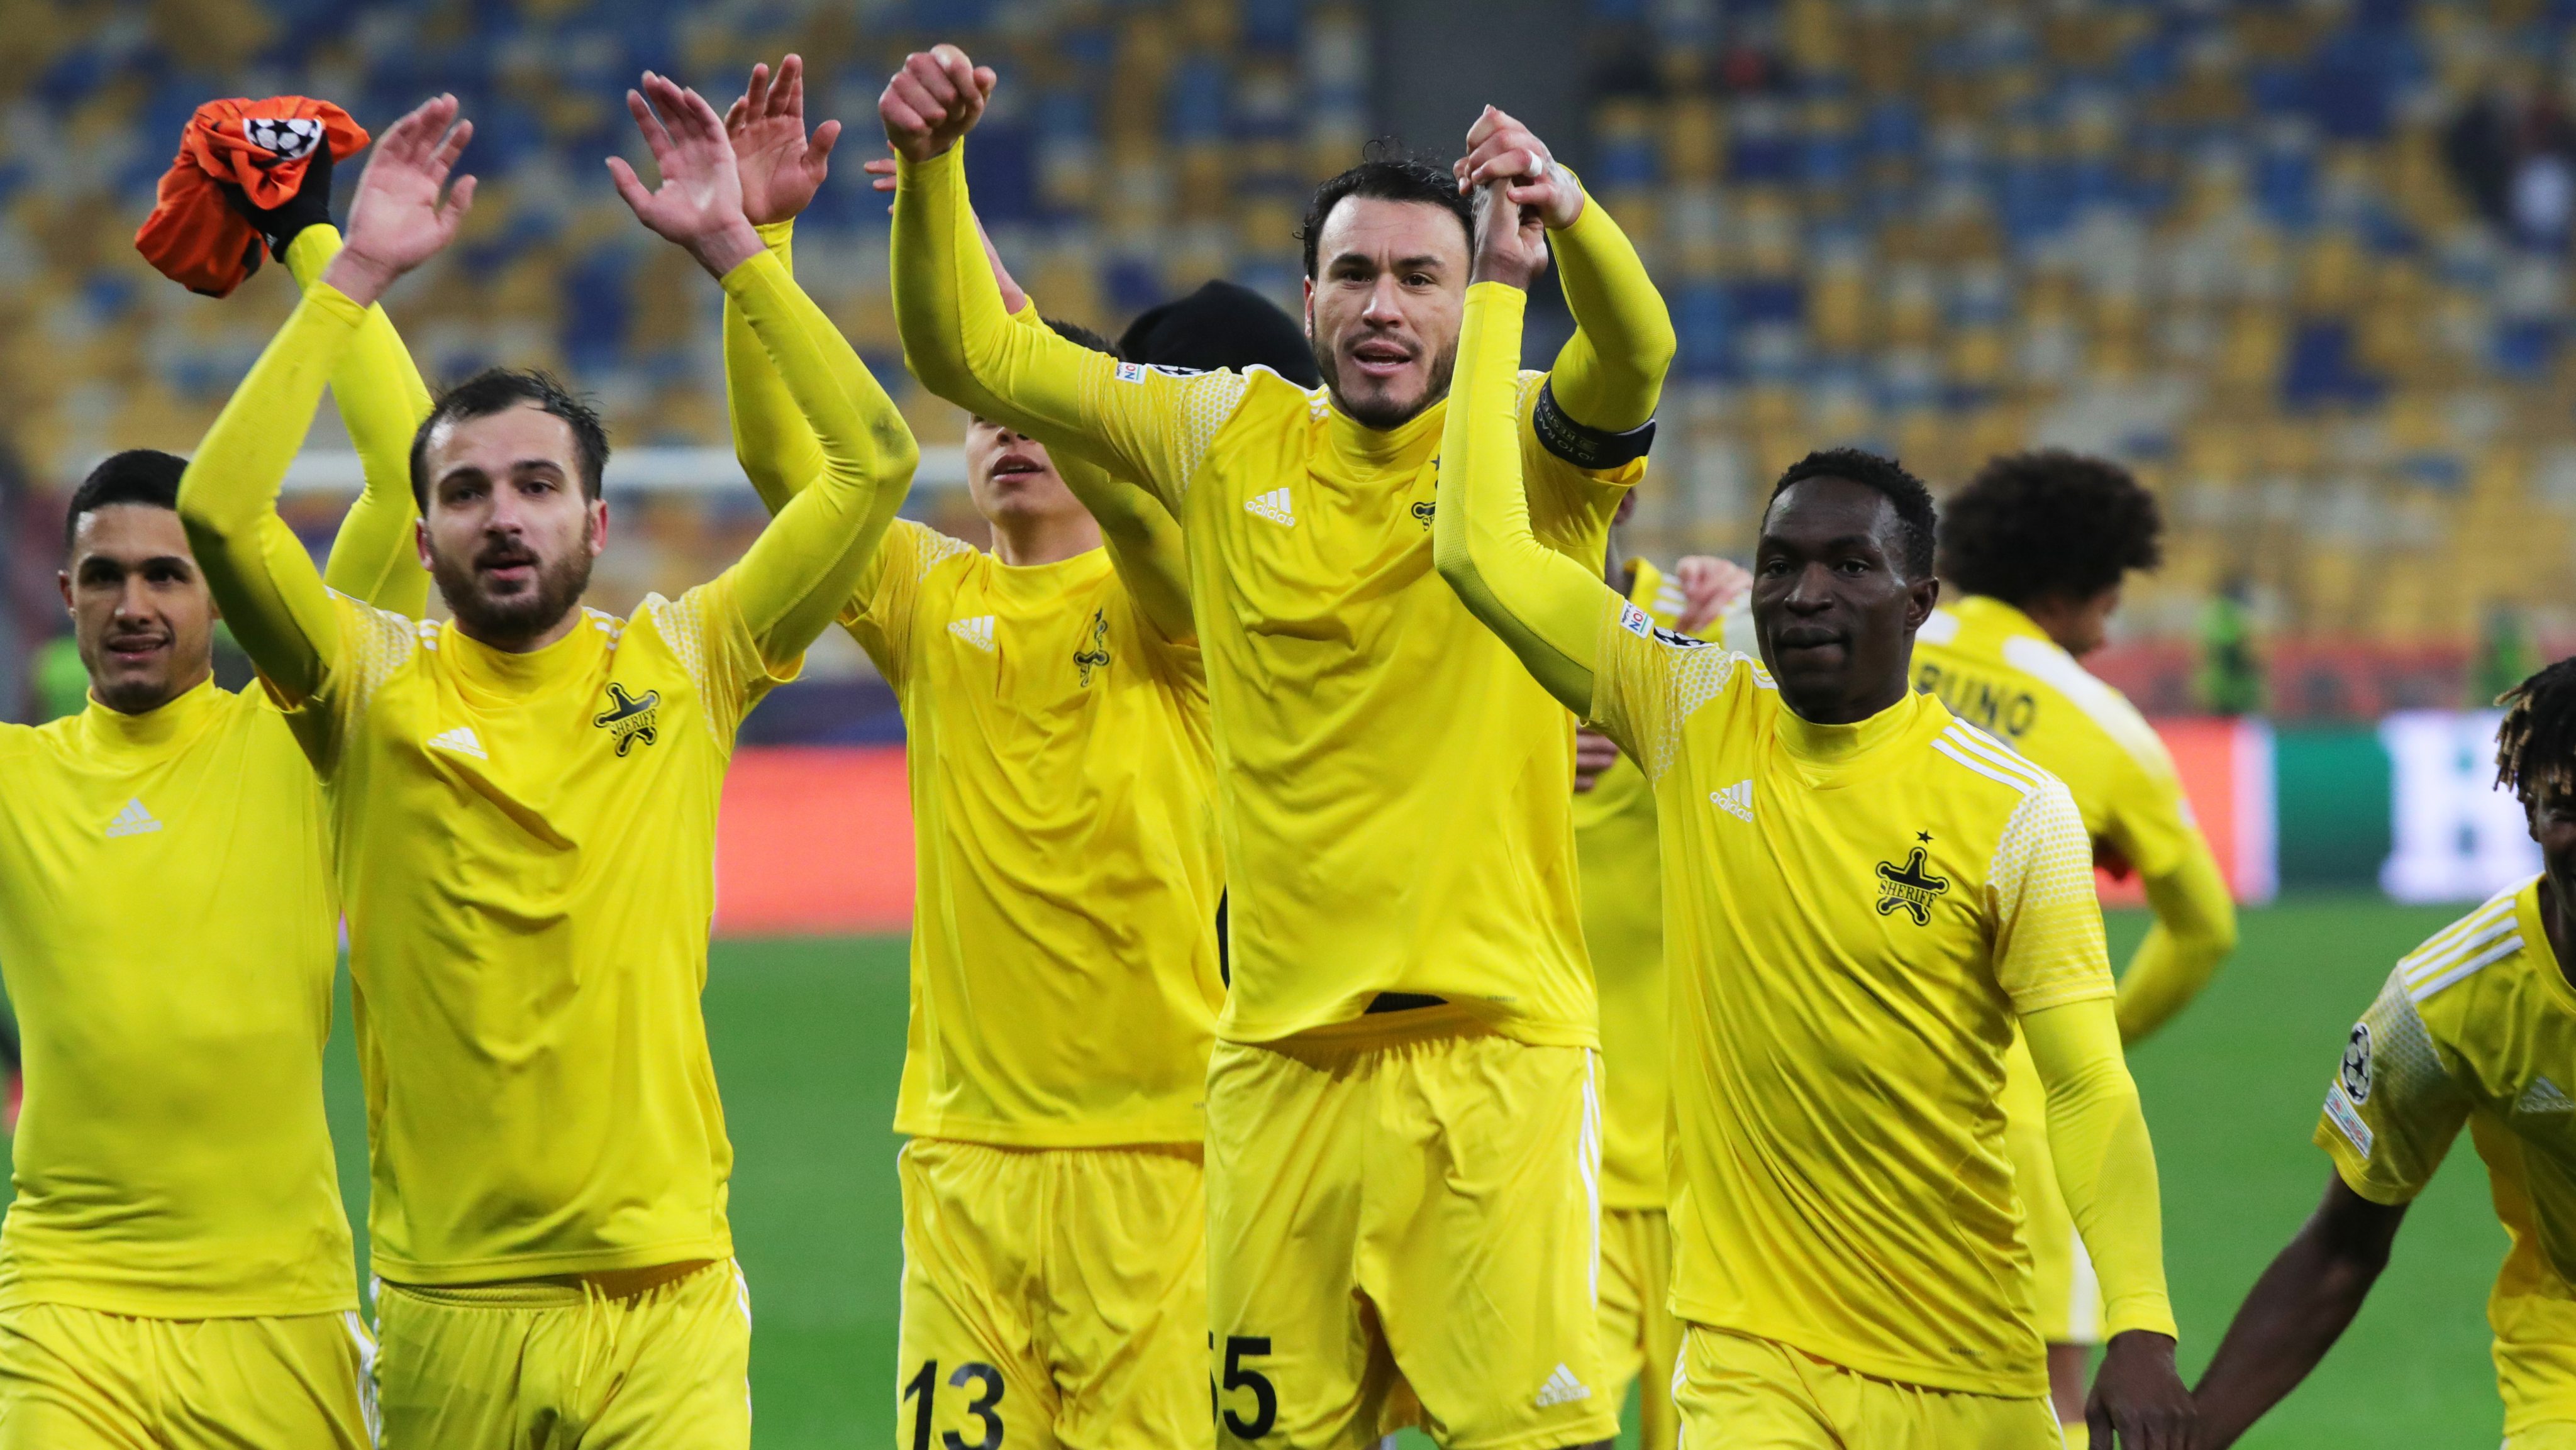 Os jogadores do Sheriff Tiraspol fizeram história na liga milionária